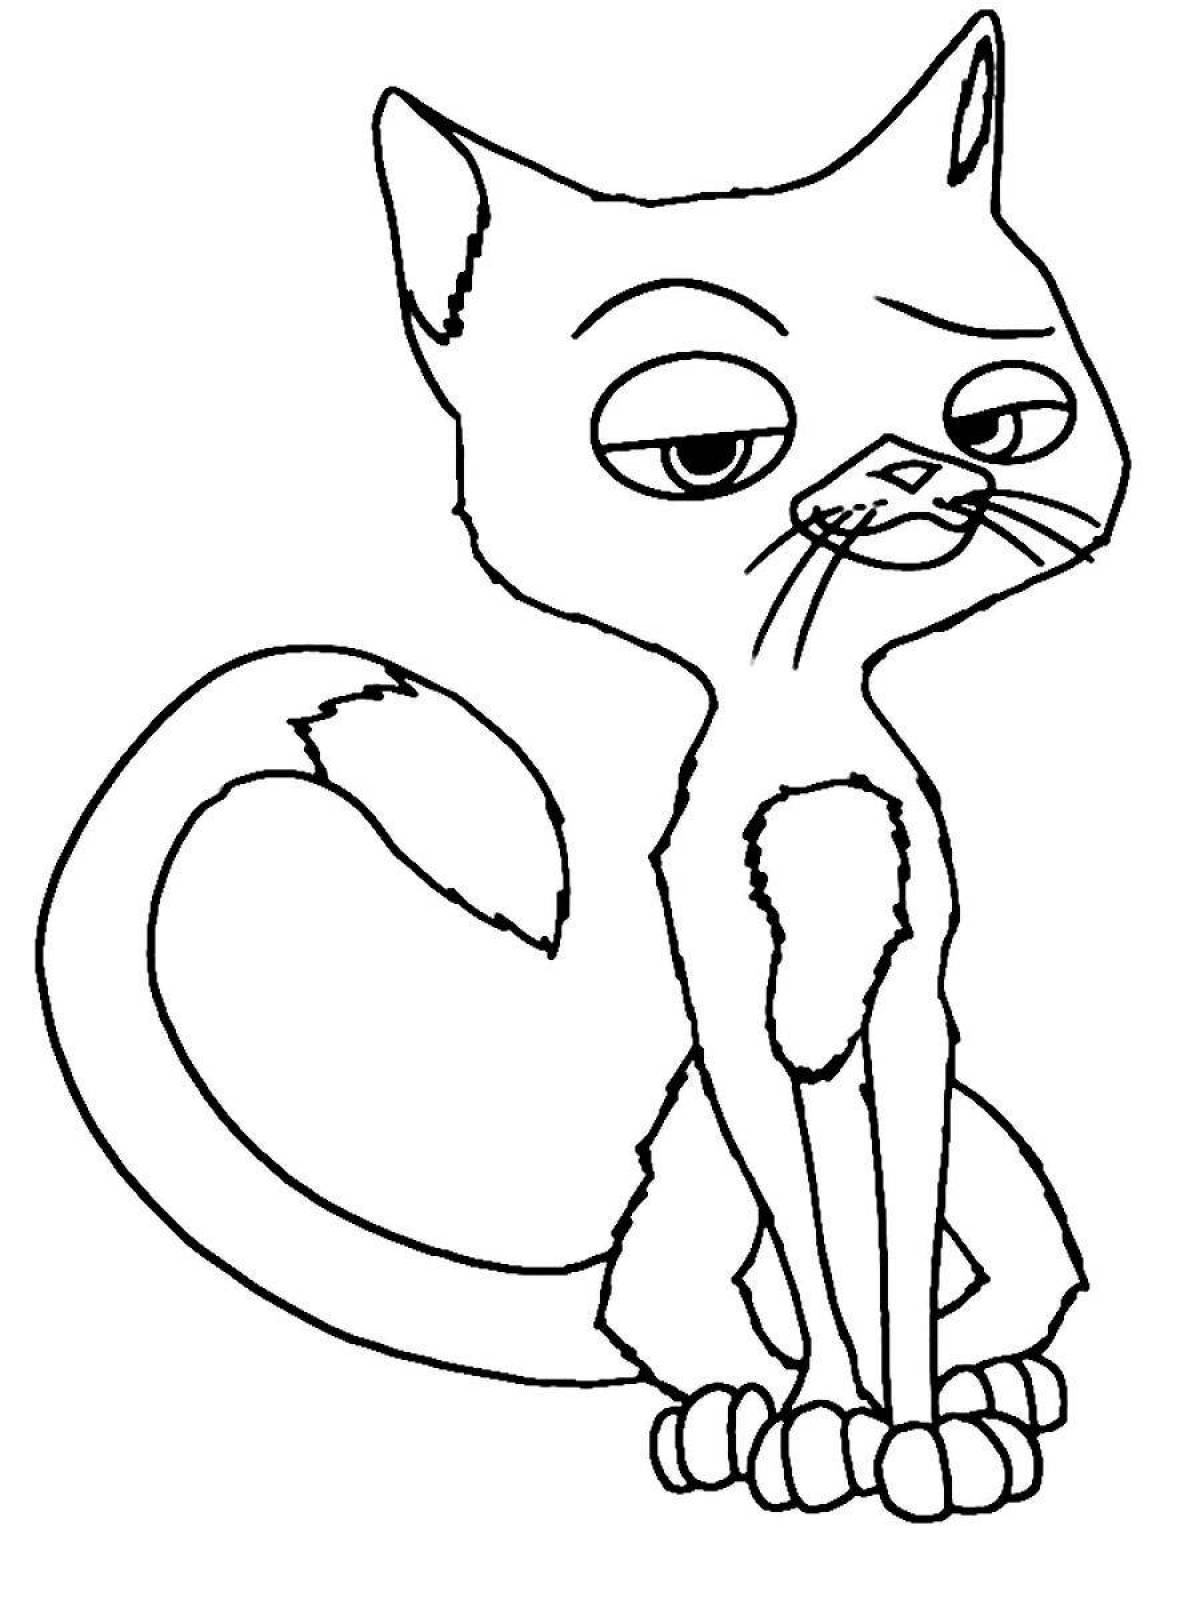 Expressive coloring cartoon cat